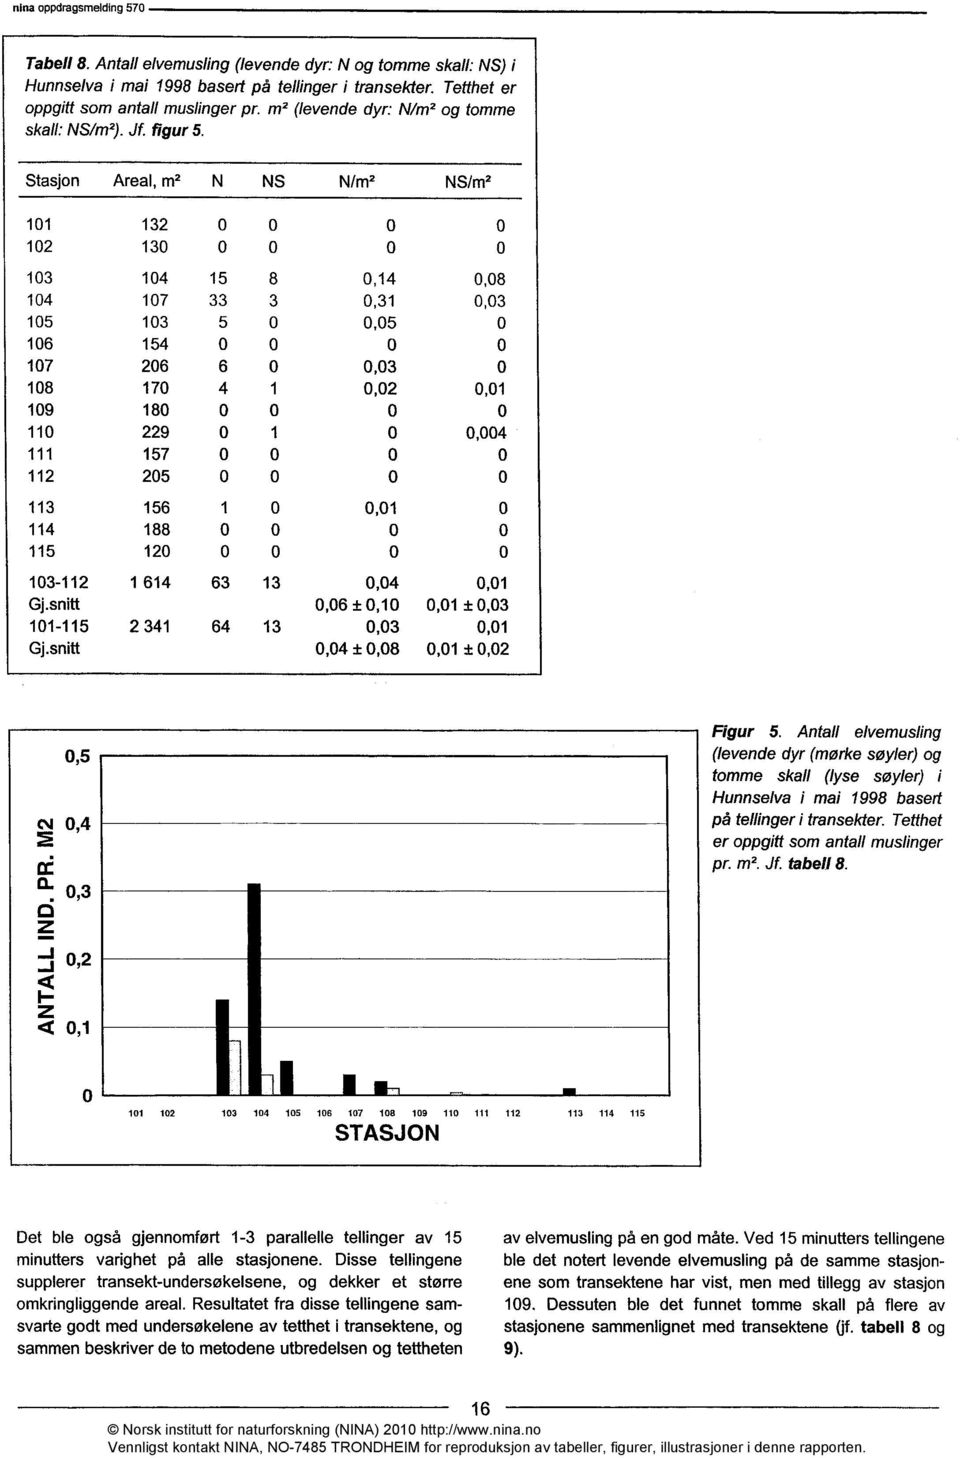 Antall elvemusling (levende dyr (mørke søyler) og tomme skall (lyse søyler) i Hunnselva i mai 1998 basert på tellinger i transekter. Tetthet er oppgitt som antall muslinger pr. m2. Jf. tabell 8.